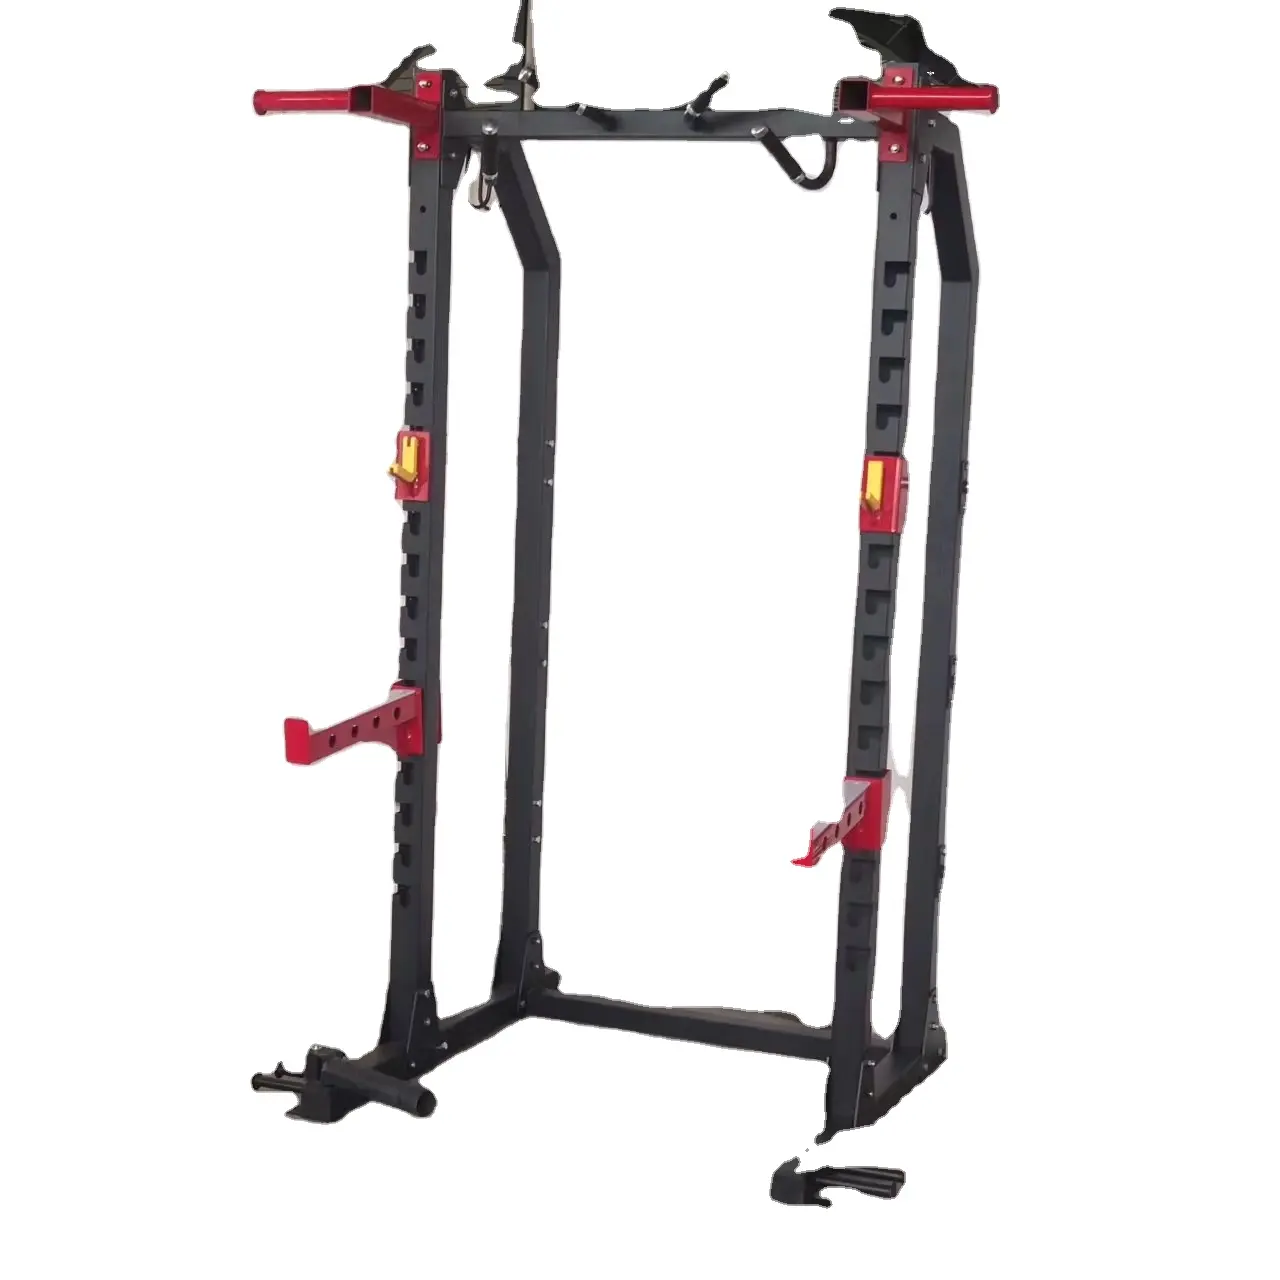 Kommerzielle Kraft trainings platte Geladene Fitness geräte Kraft training Squat Rack Power Rack Maschine